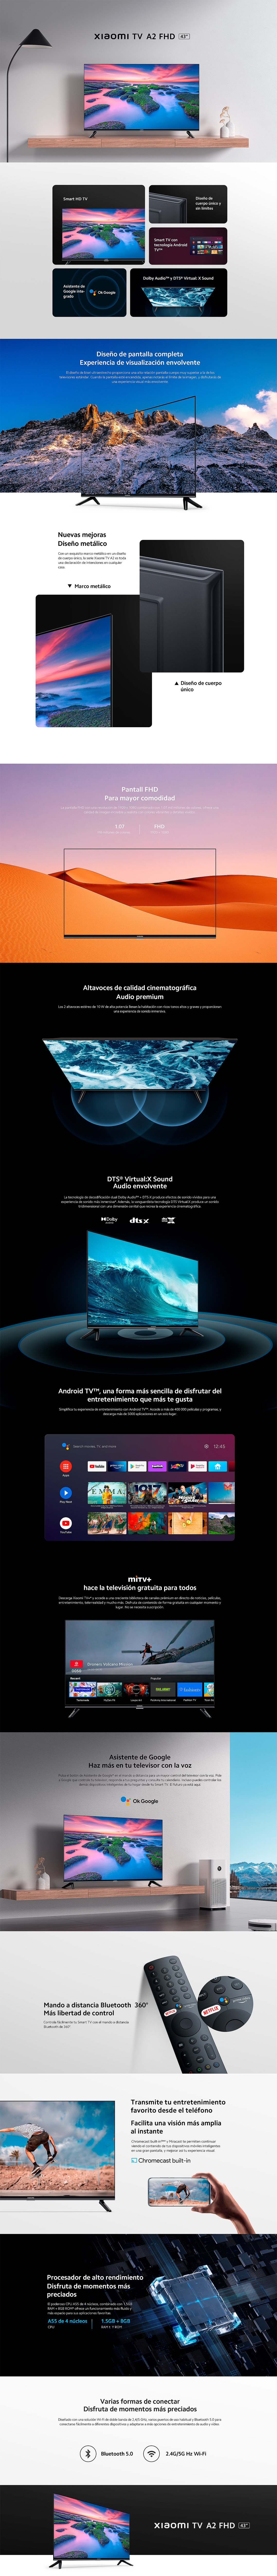 Xiaomi Smart TV LED 43 A2 Series EU FHD